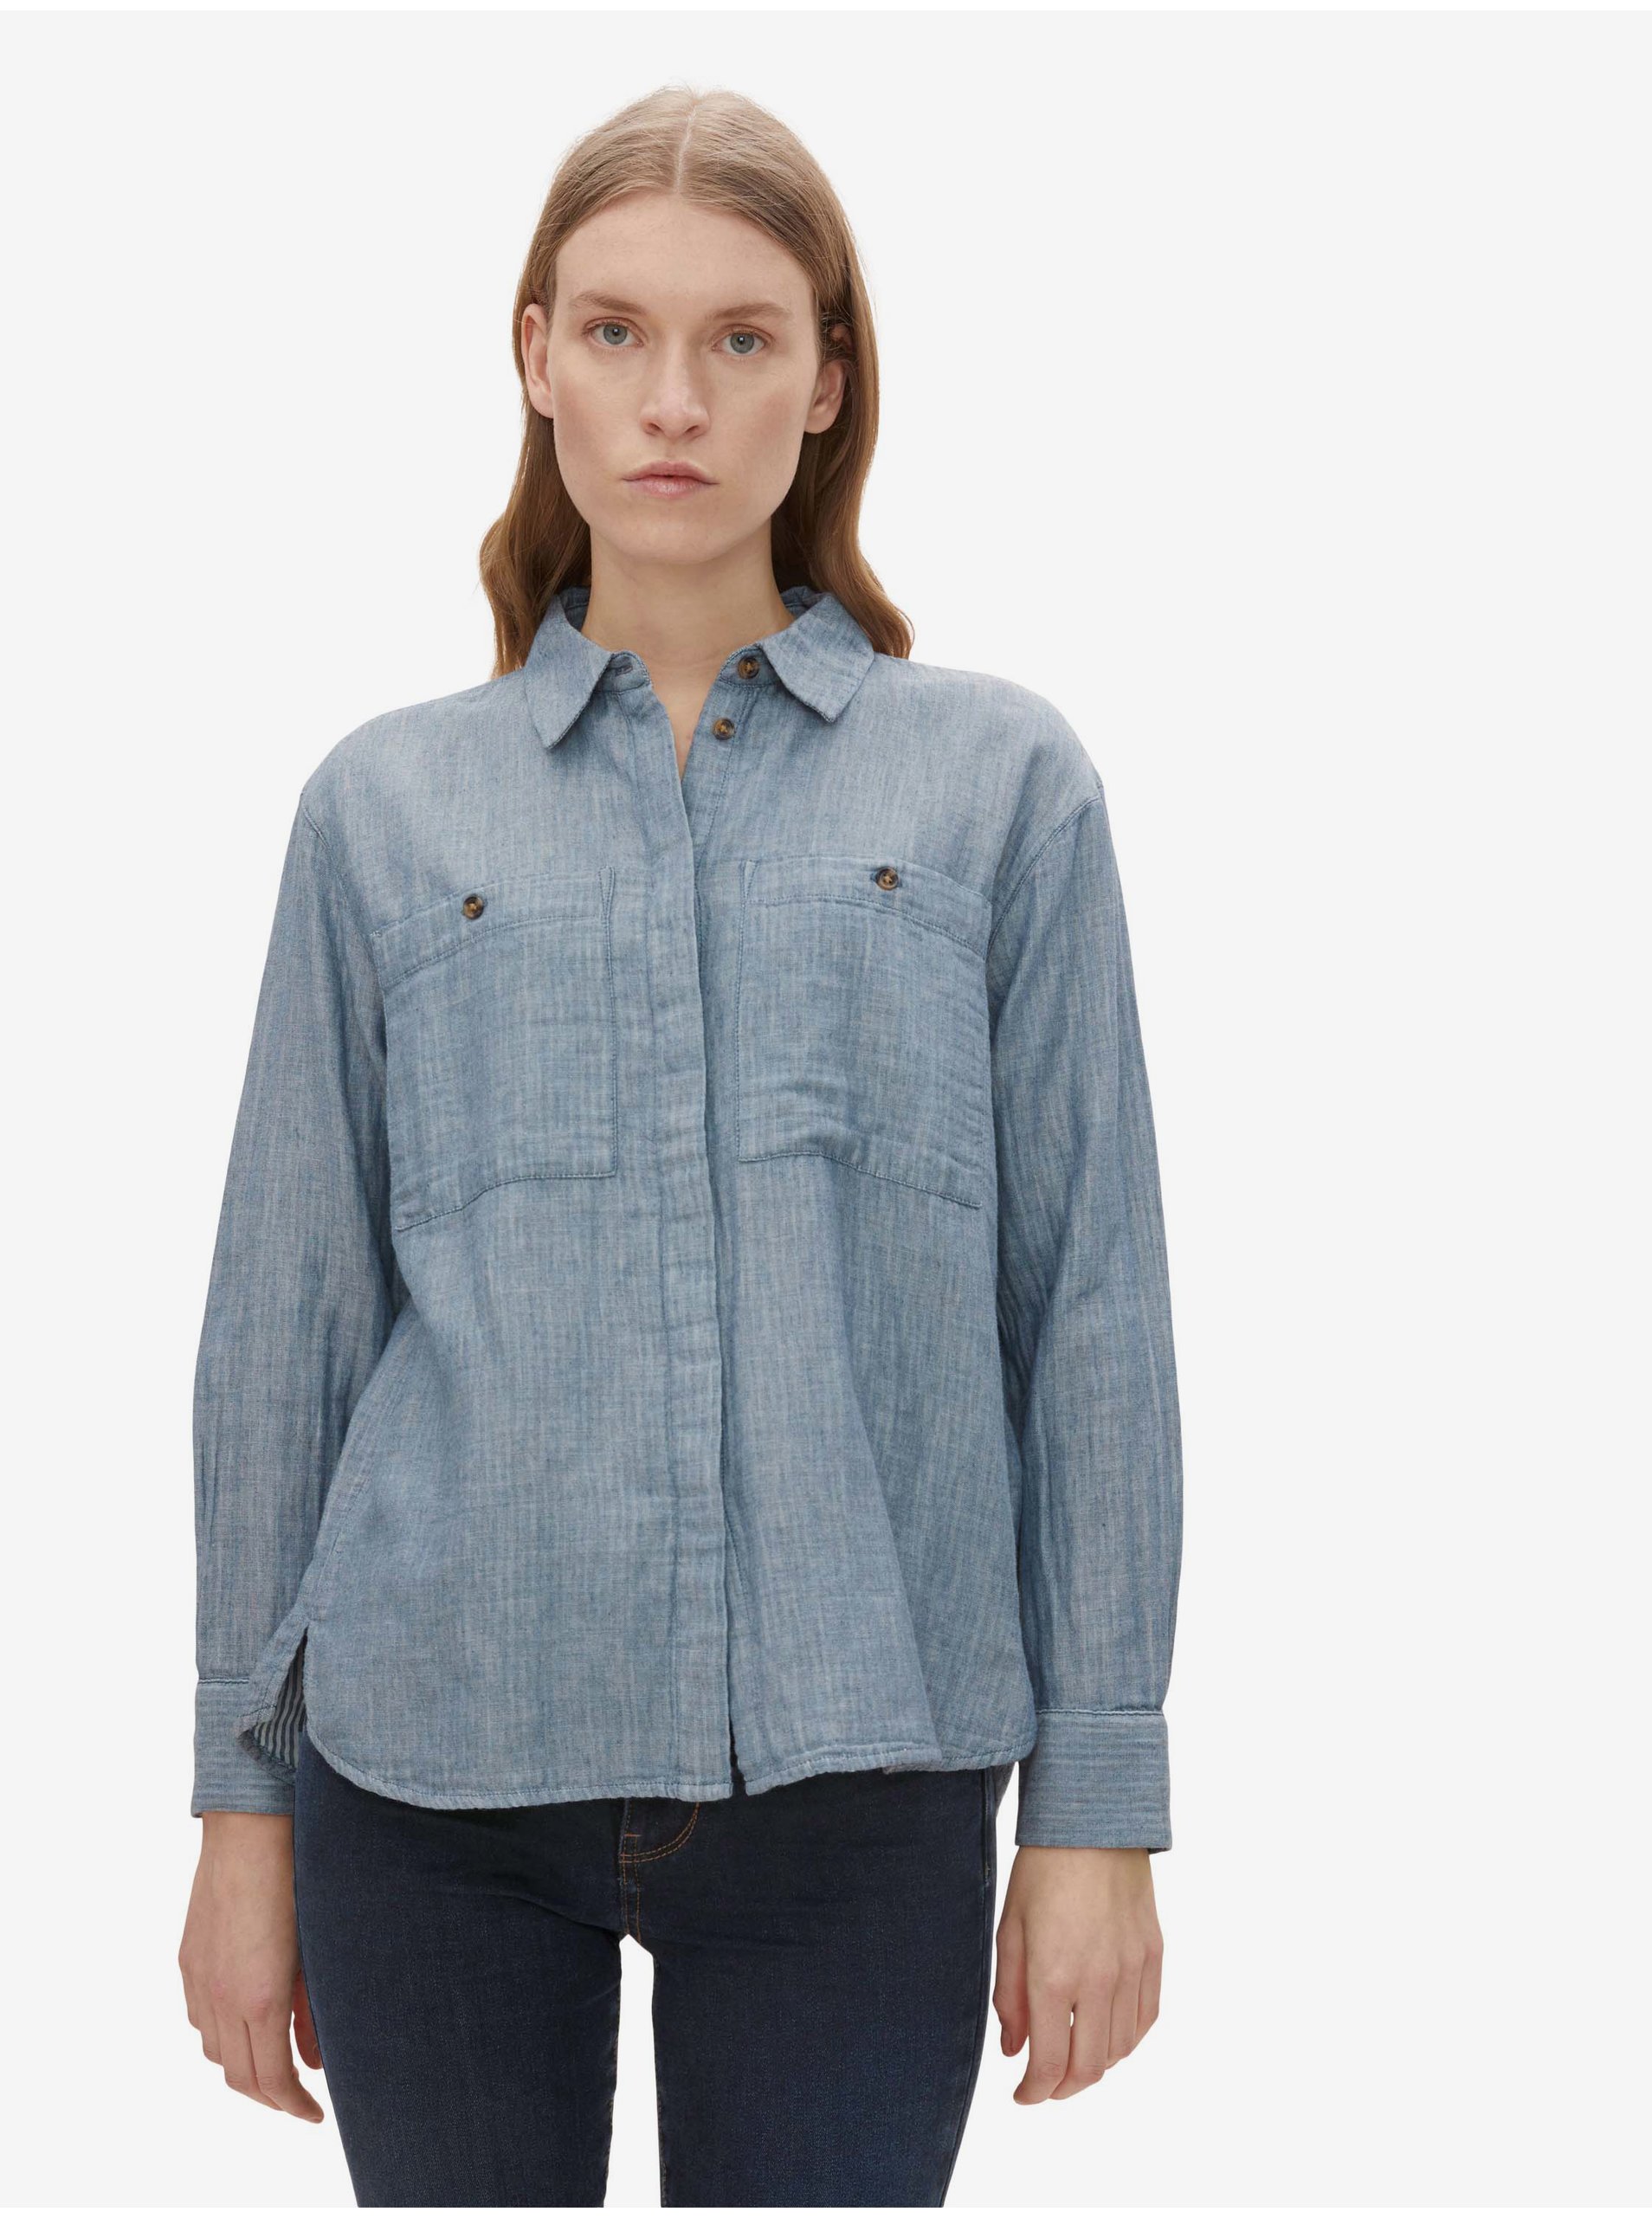 E-shop Modrá dámská pruhovaná košile Tom Tailor